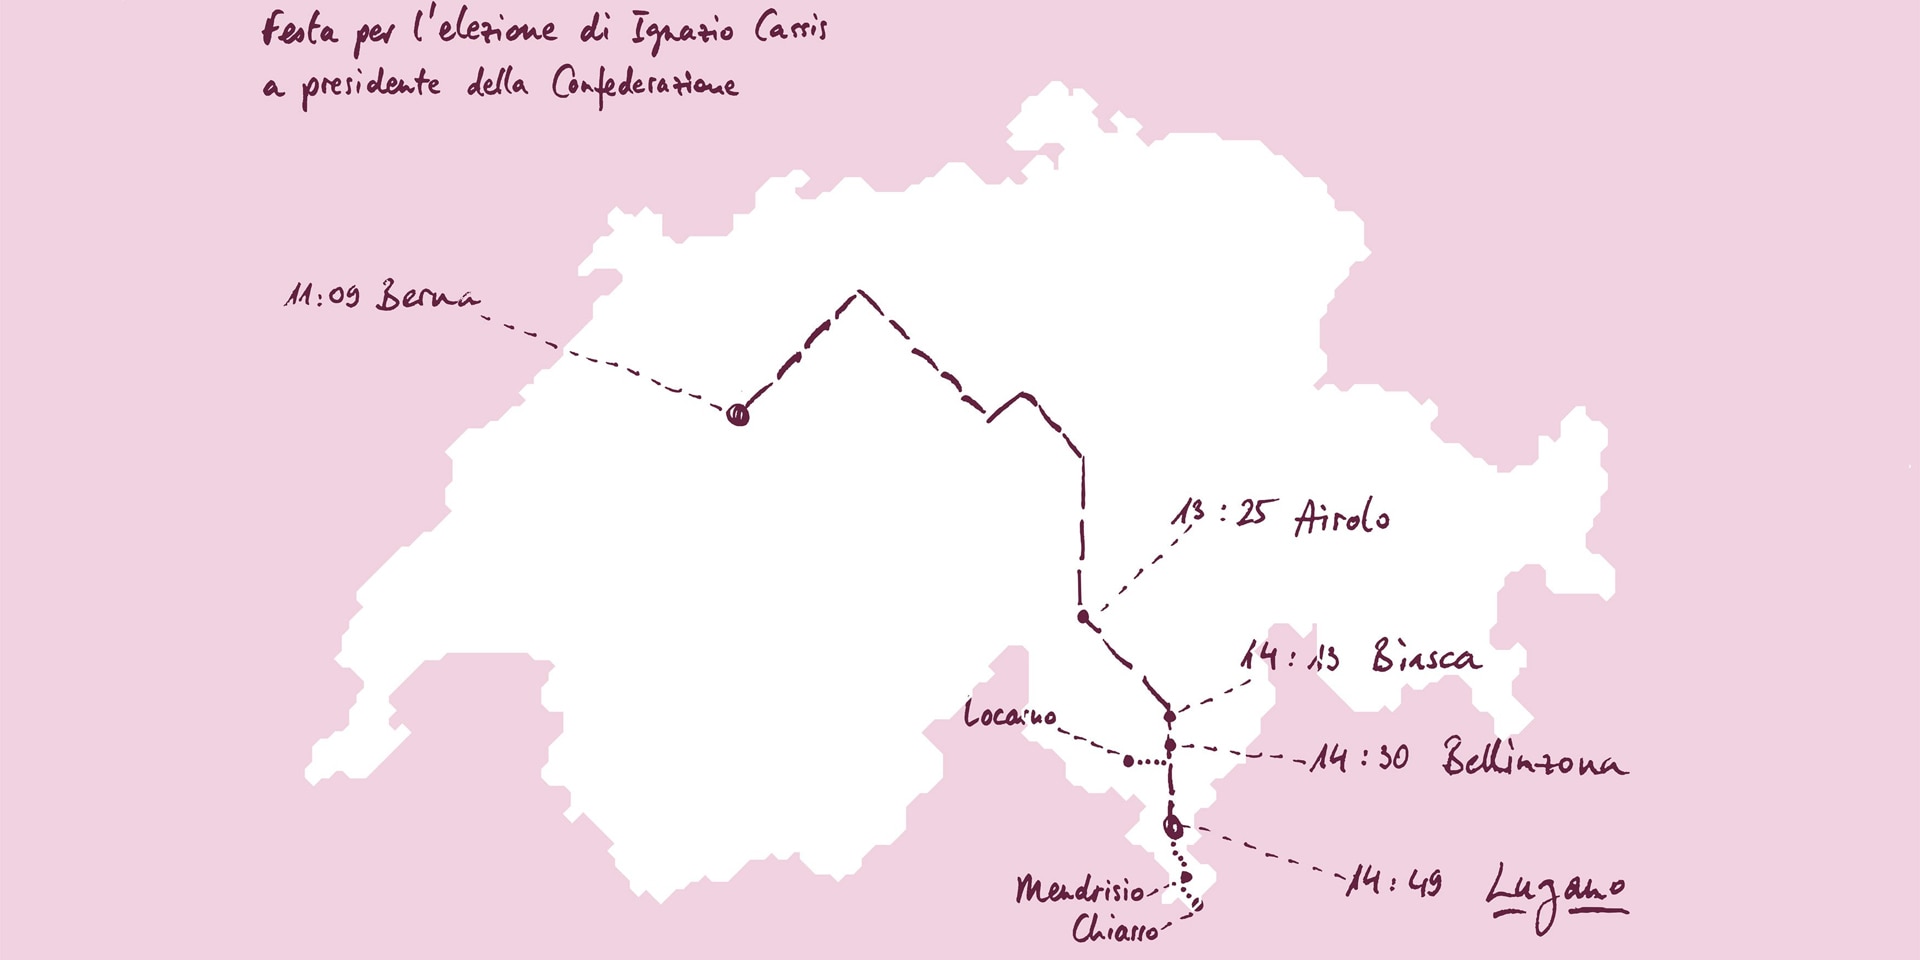 Eine Schweizerkarte zeigt die Reiseroute von Bundespräsident Cassis sowie die Gemeinden, die an den Feierlichkeiten teilnehmen werden. 